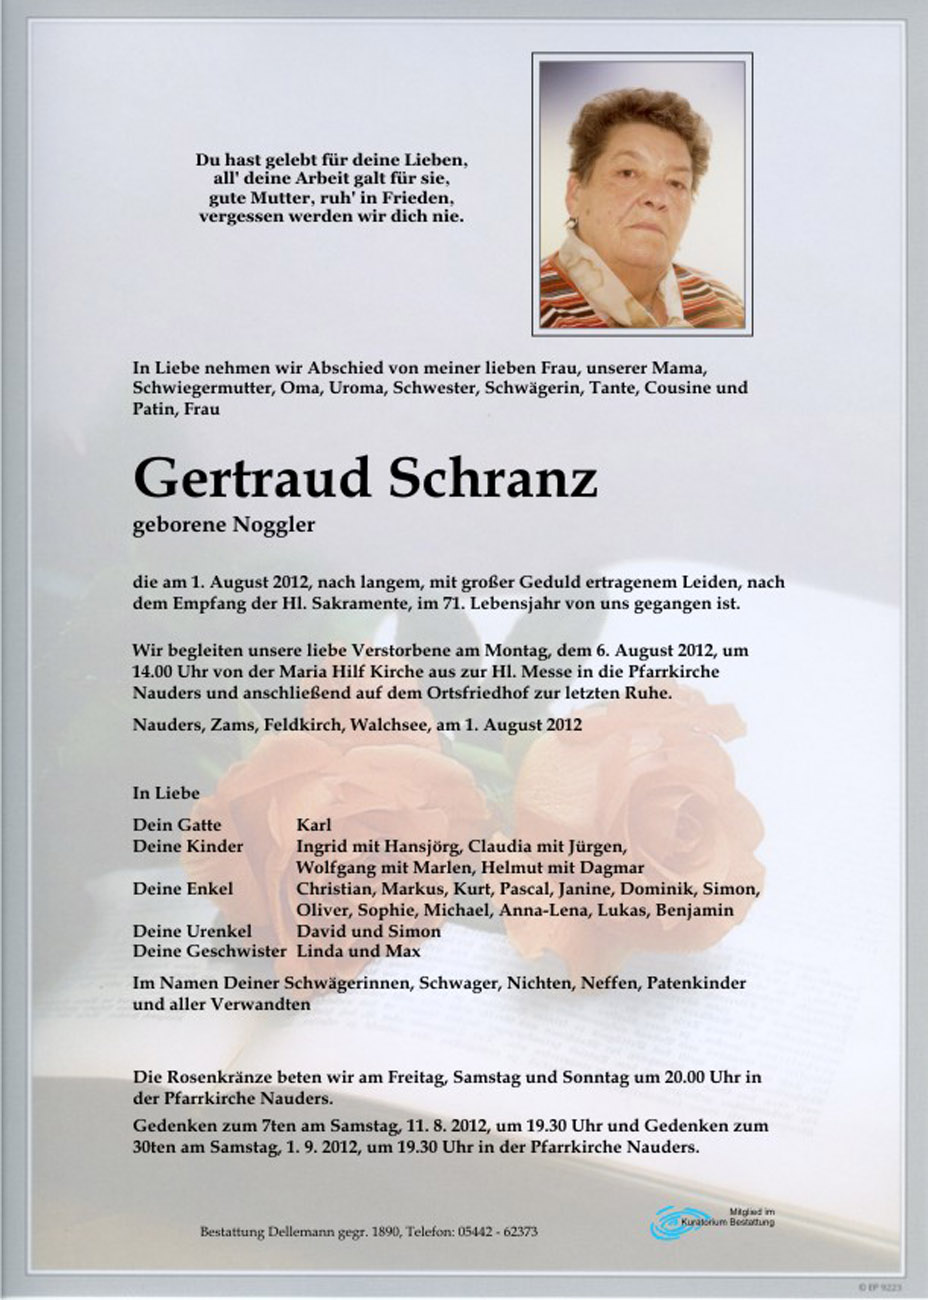   Gertraud Schranz